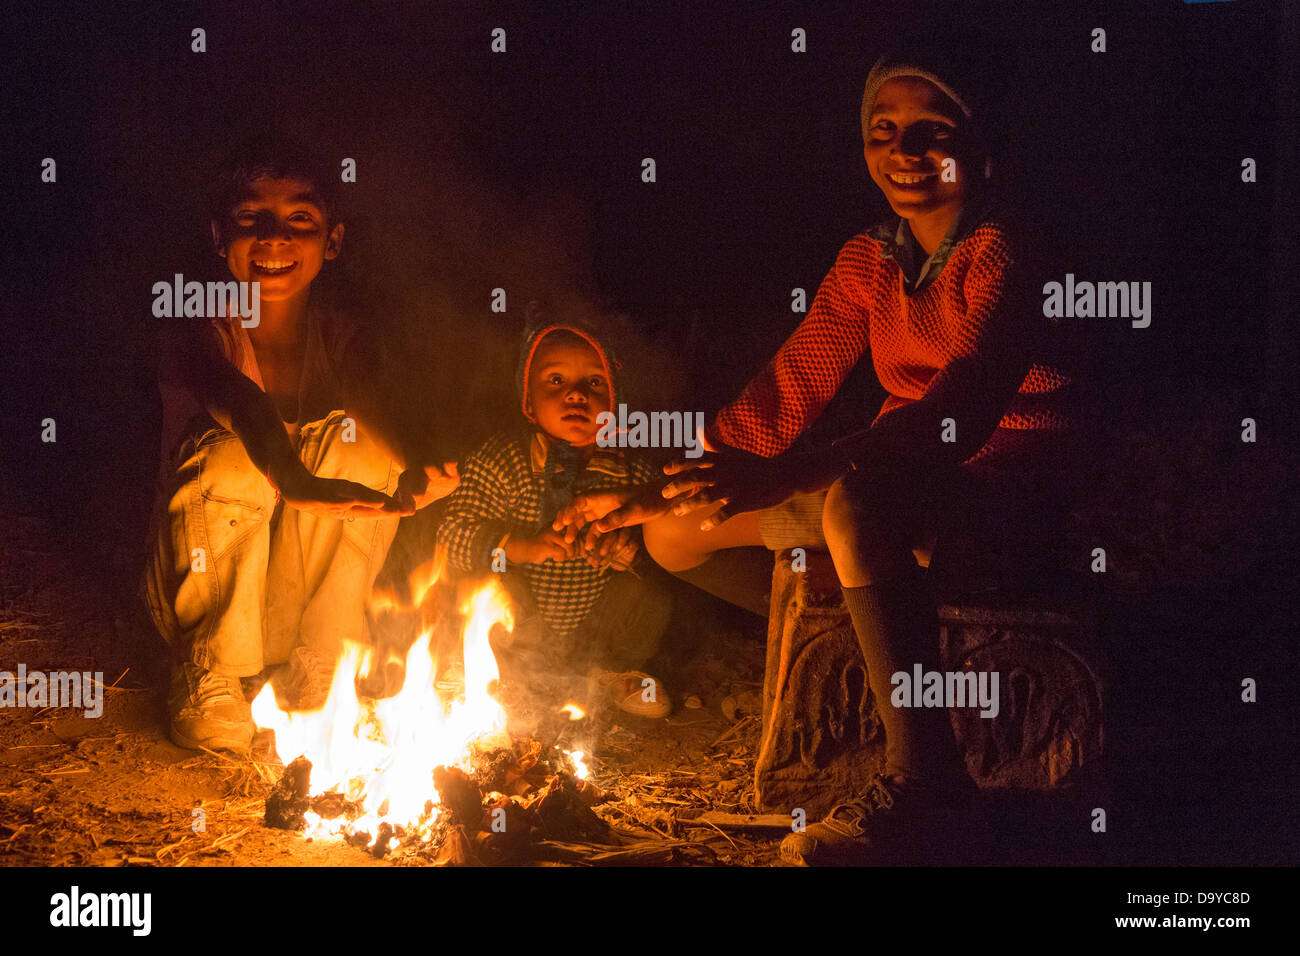 Indien, Uttar Pradesh, Agra, drei Kinder sitzen um Feuer in der Nacht Stockfoto